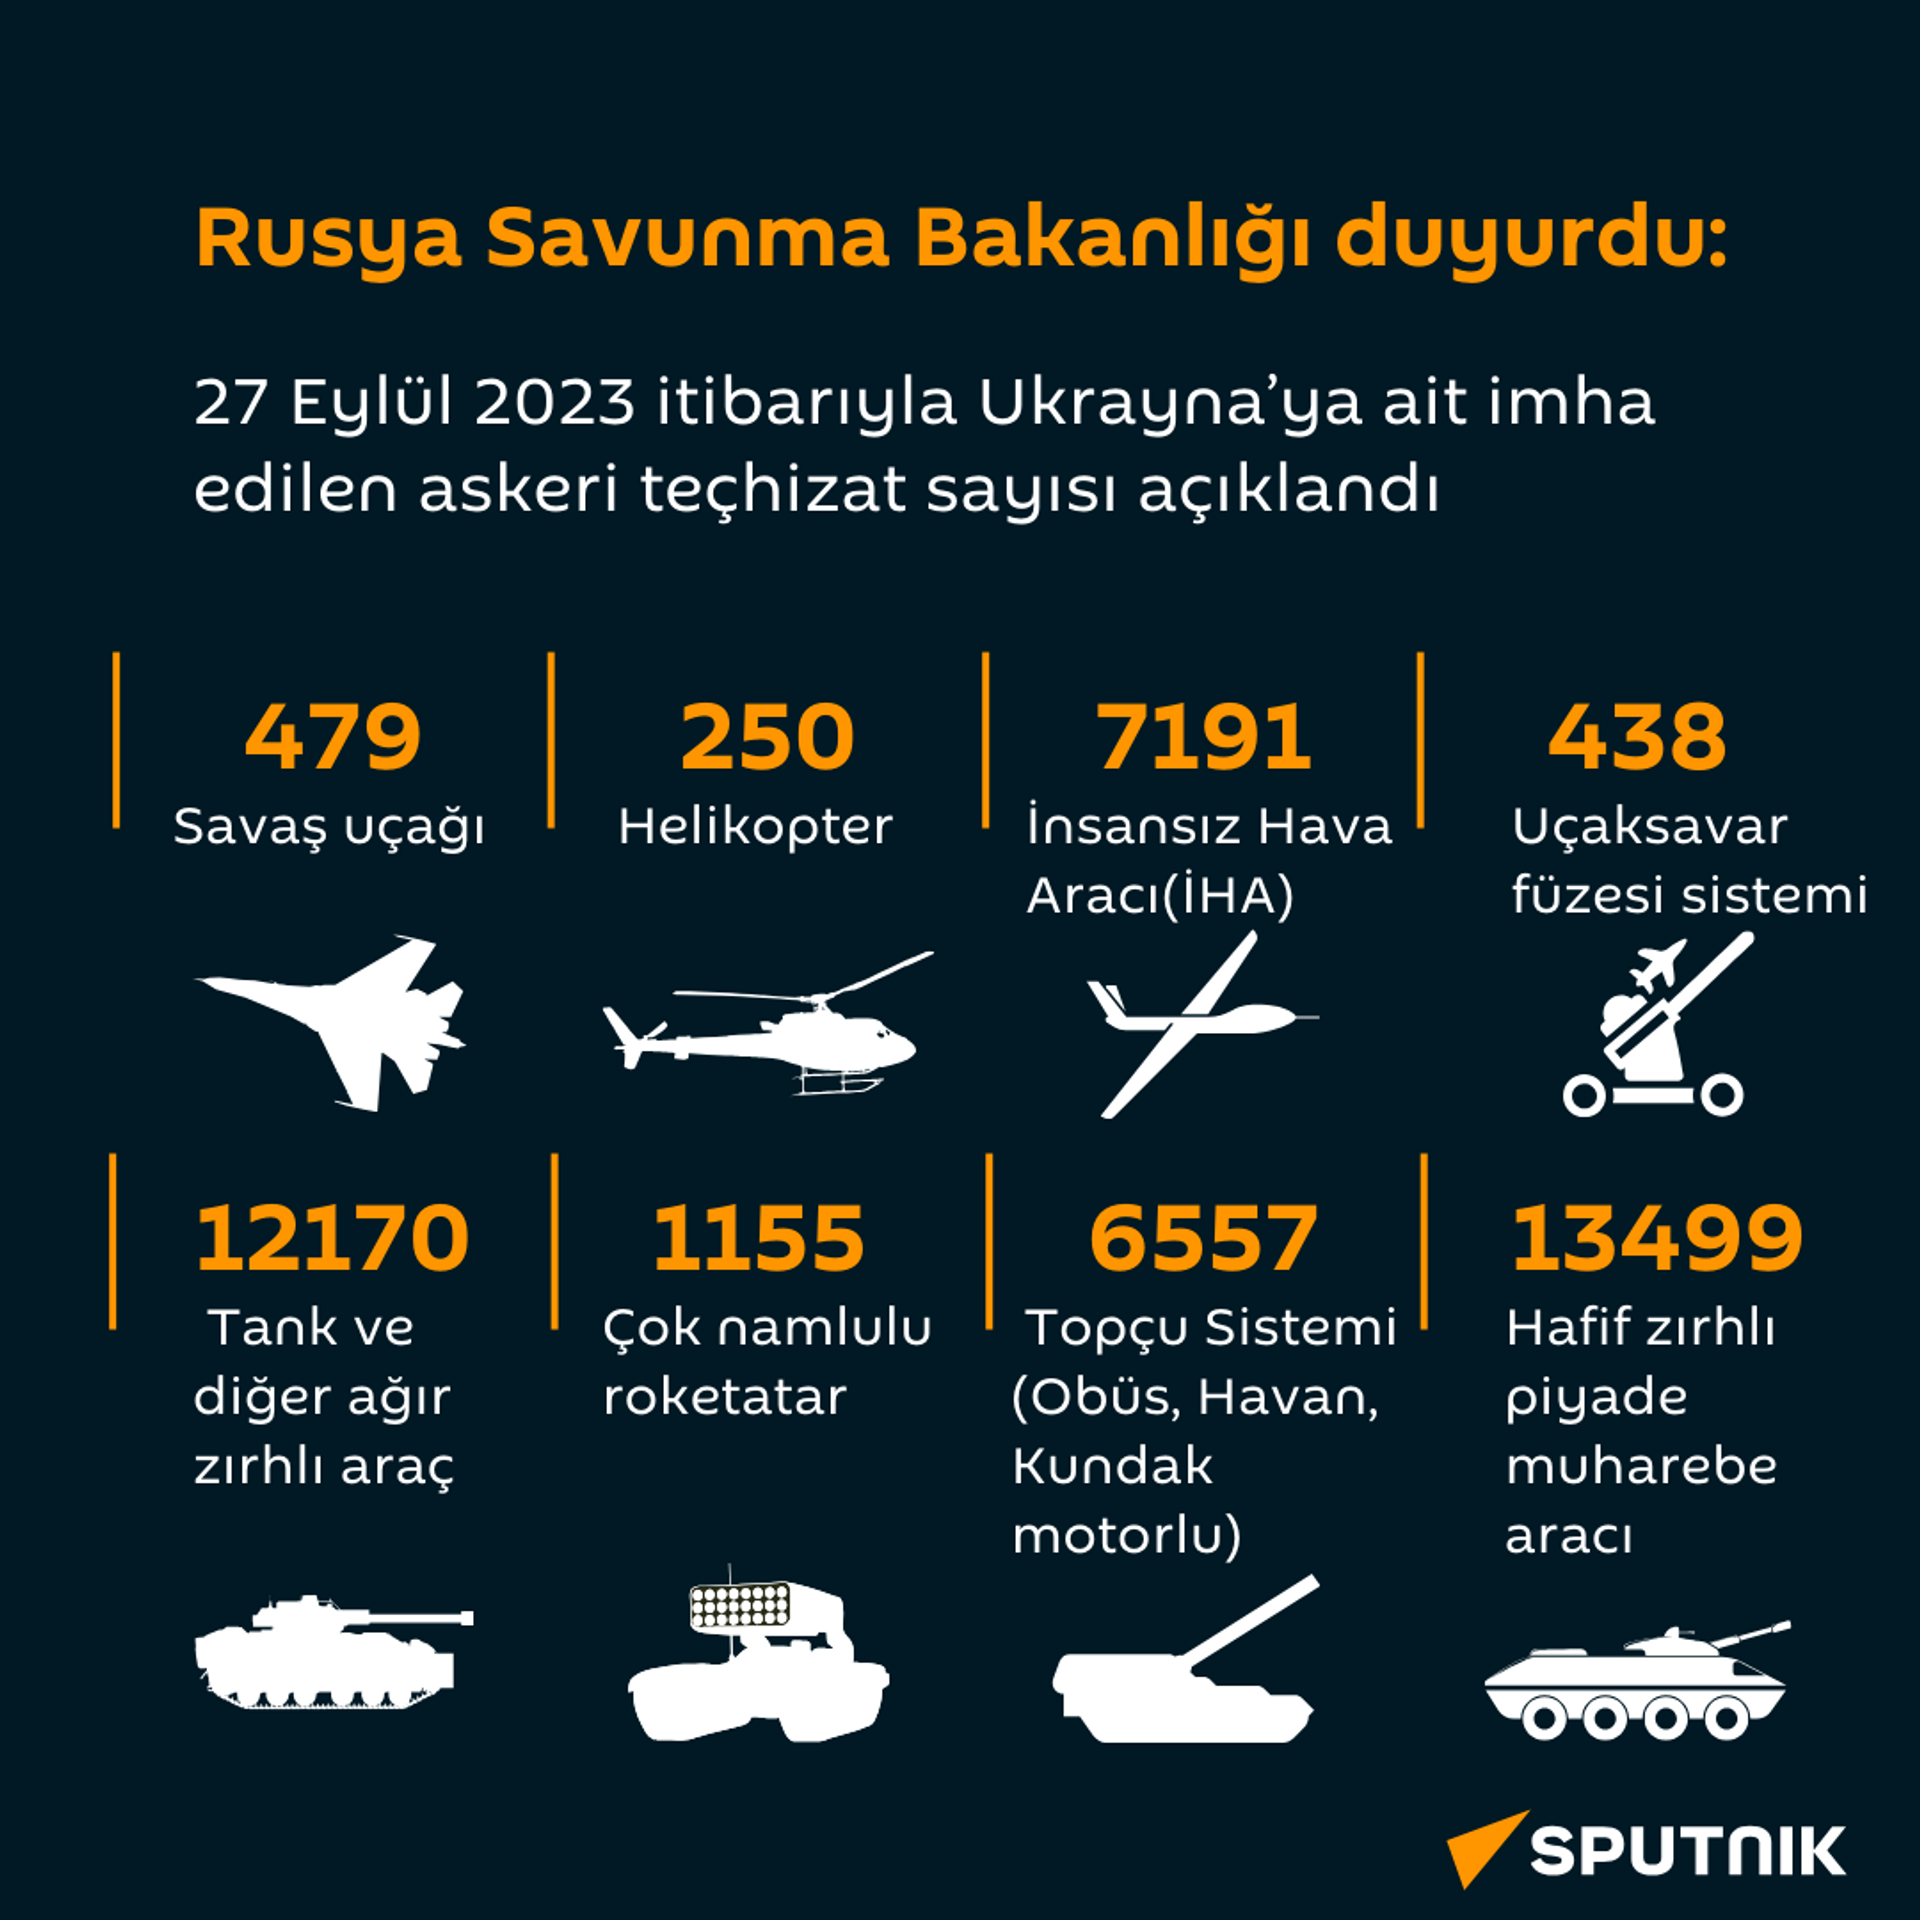 27 Eylül 2023 itibarıyla Ukrayna'ya ait imha edilen askeri teçhizat sayısı - Sputnik Türkiye, 1920, 28.09.2023